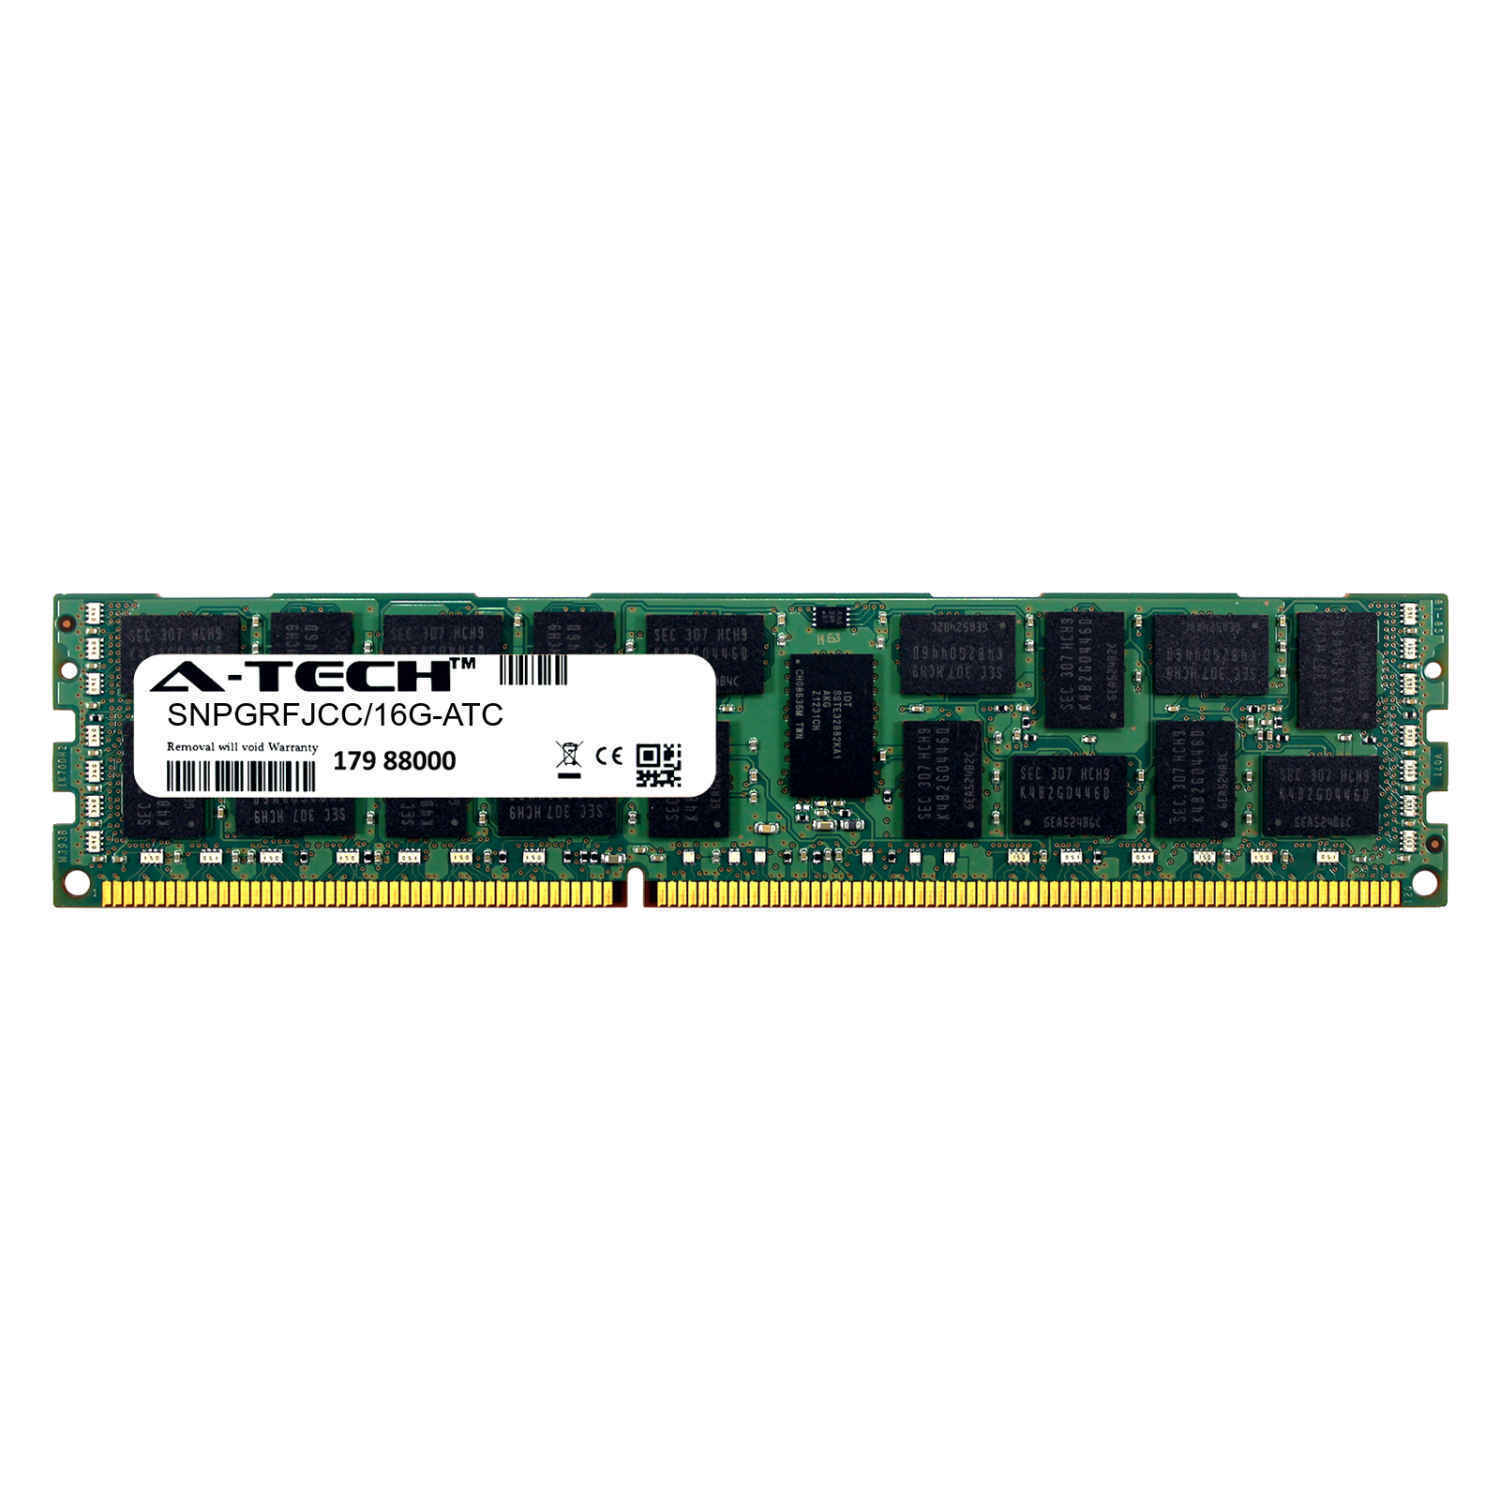 16GB DDR3 PC3-8500R ECC RDIMM (Dell SNPGRFJCC/16G Equivalent) Server Memory RAM